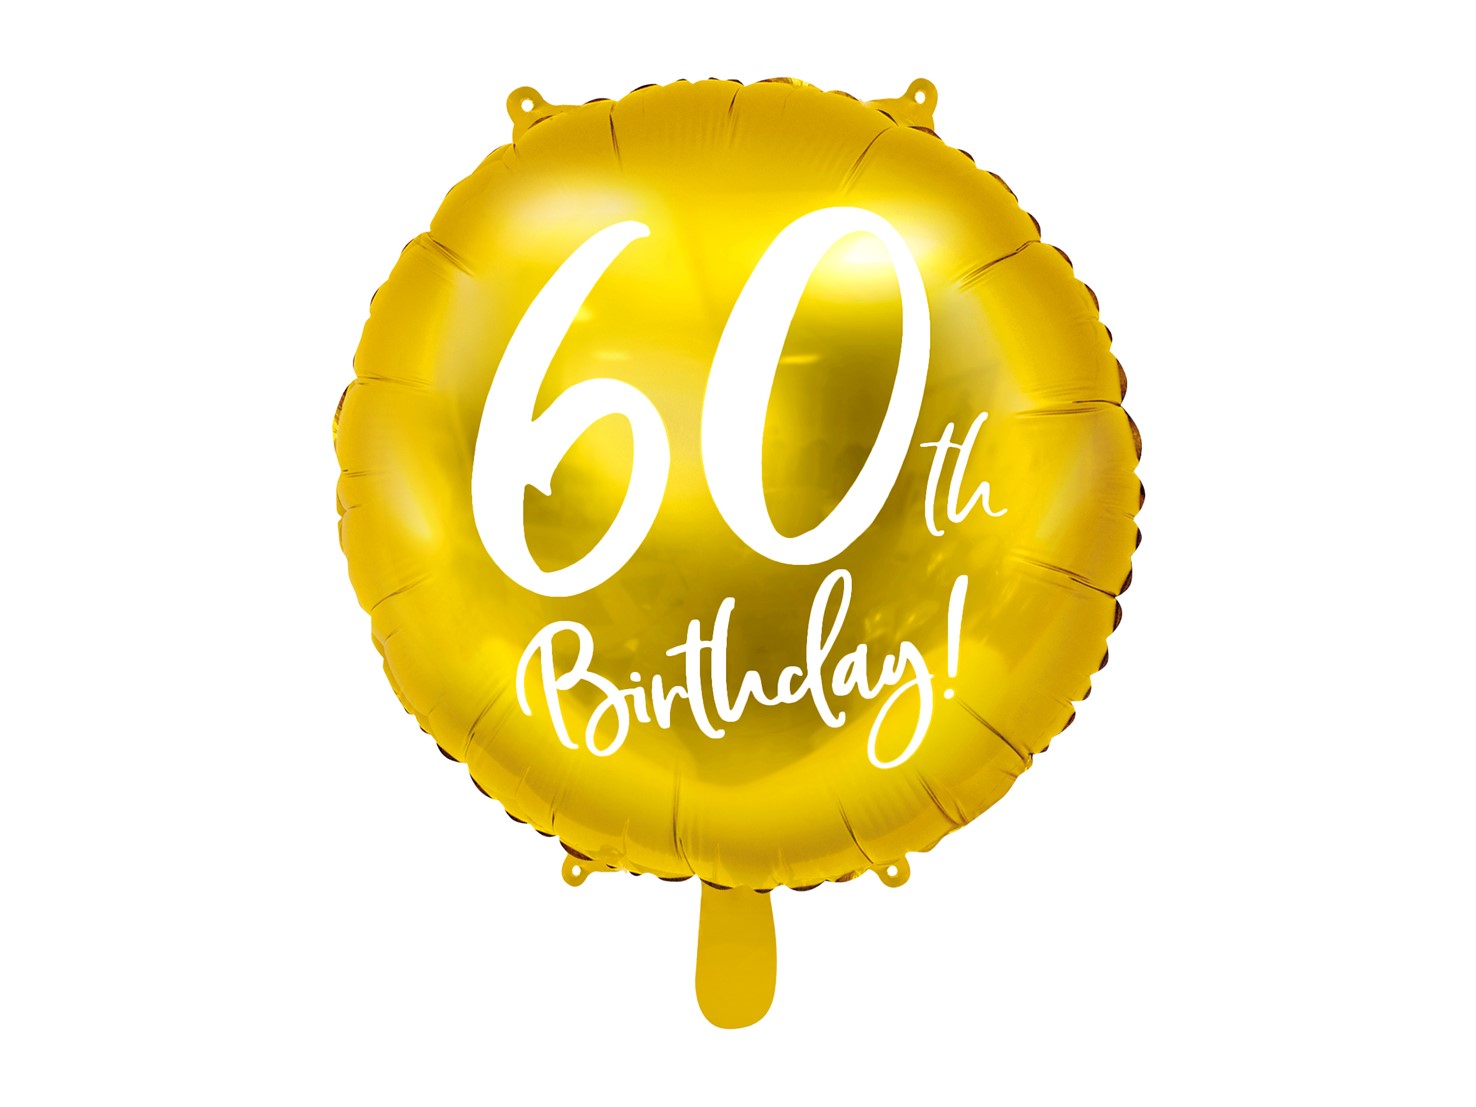 Μπαλόνι Foil Χρυσό 60th Birthday 45εκ